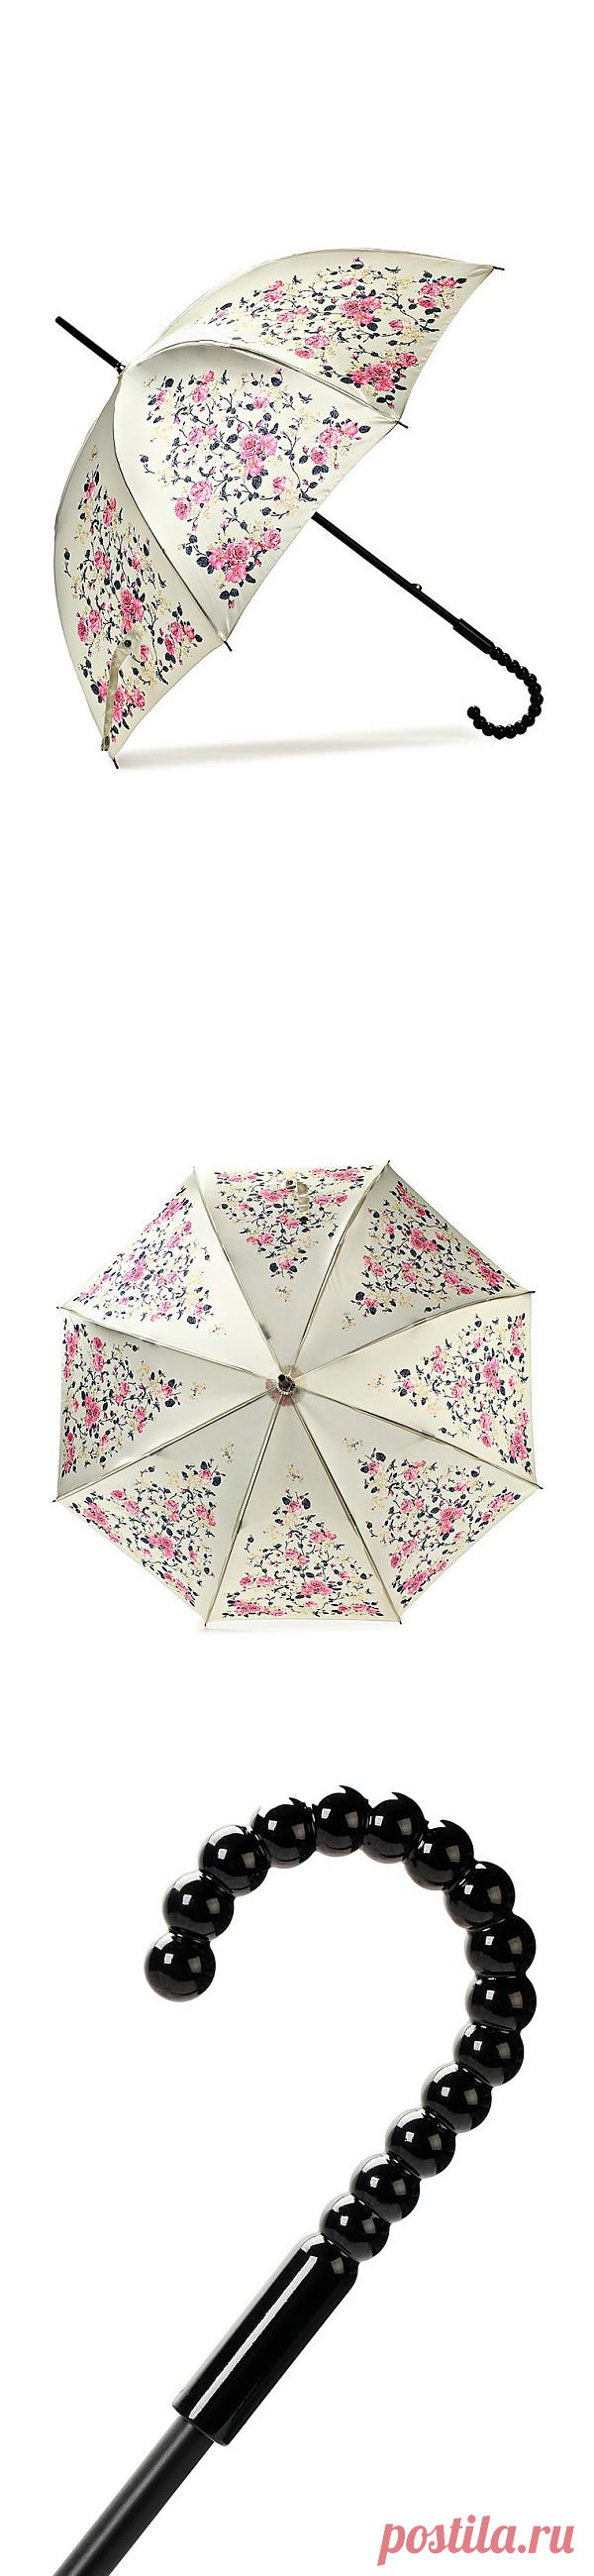 Просто супер-элегантный зонт был обнаружен на Lamoda. Нежный, красивый и недорогой! 
Как быть, если хочется ВСЁ купить?:)
Стоит 1420 рублей